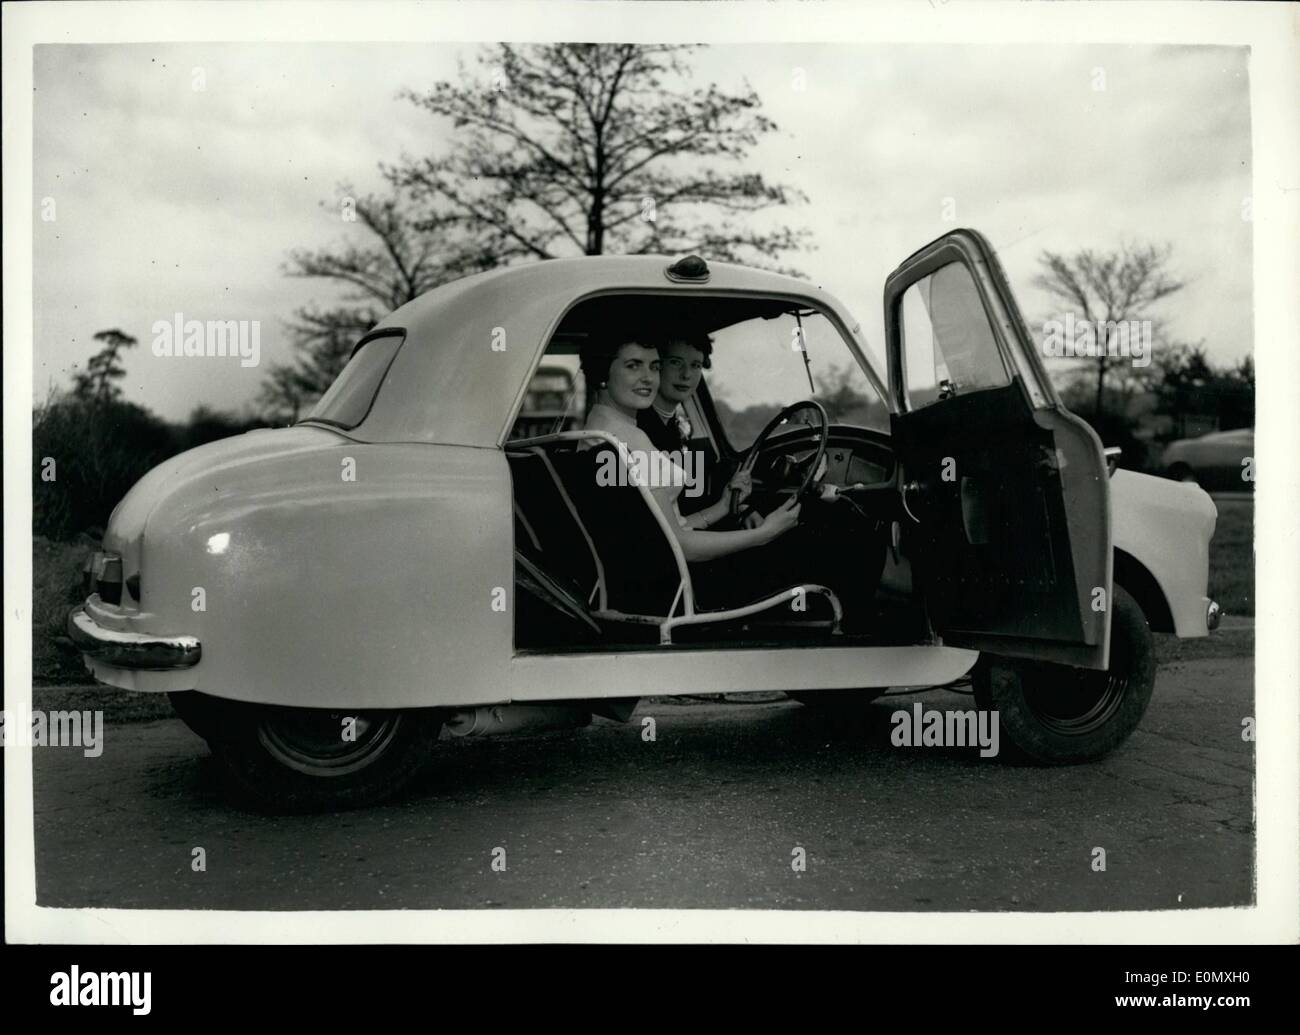 10 ottobre 1956 - Nuova auto leggera economica britannica. L'Unicar in mostra: L' Unicar - la nuovissima auto leggera britannica a quattro ruote - realizzata da S.E. OPPrman di Boreham Wood - è stato da vedere per la prima volta oggi. Il prezzo dell'auto è di 39... 10. o. tasse di acquisto incluse. È dotato di un corpo in fibra di vetro ed è dotato di sospensione indipendente. I produttori rivendicano una velocità massima di 60 m.p.h a 55 m.p,g. dai suoi 322 c.c. British un motore a due tempi bicilindrico raffreddato ad ariaani. L'auto può ospitare due adulti e due bambini con cabina, con una distanza di circa 1,6 metri 6 poll. lungo e 4 ft. larghezza 8 poll Foto Stock